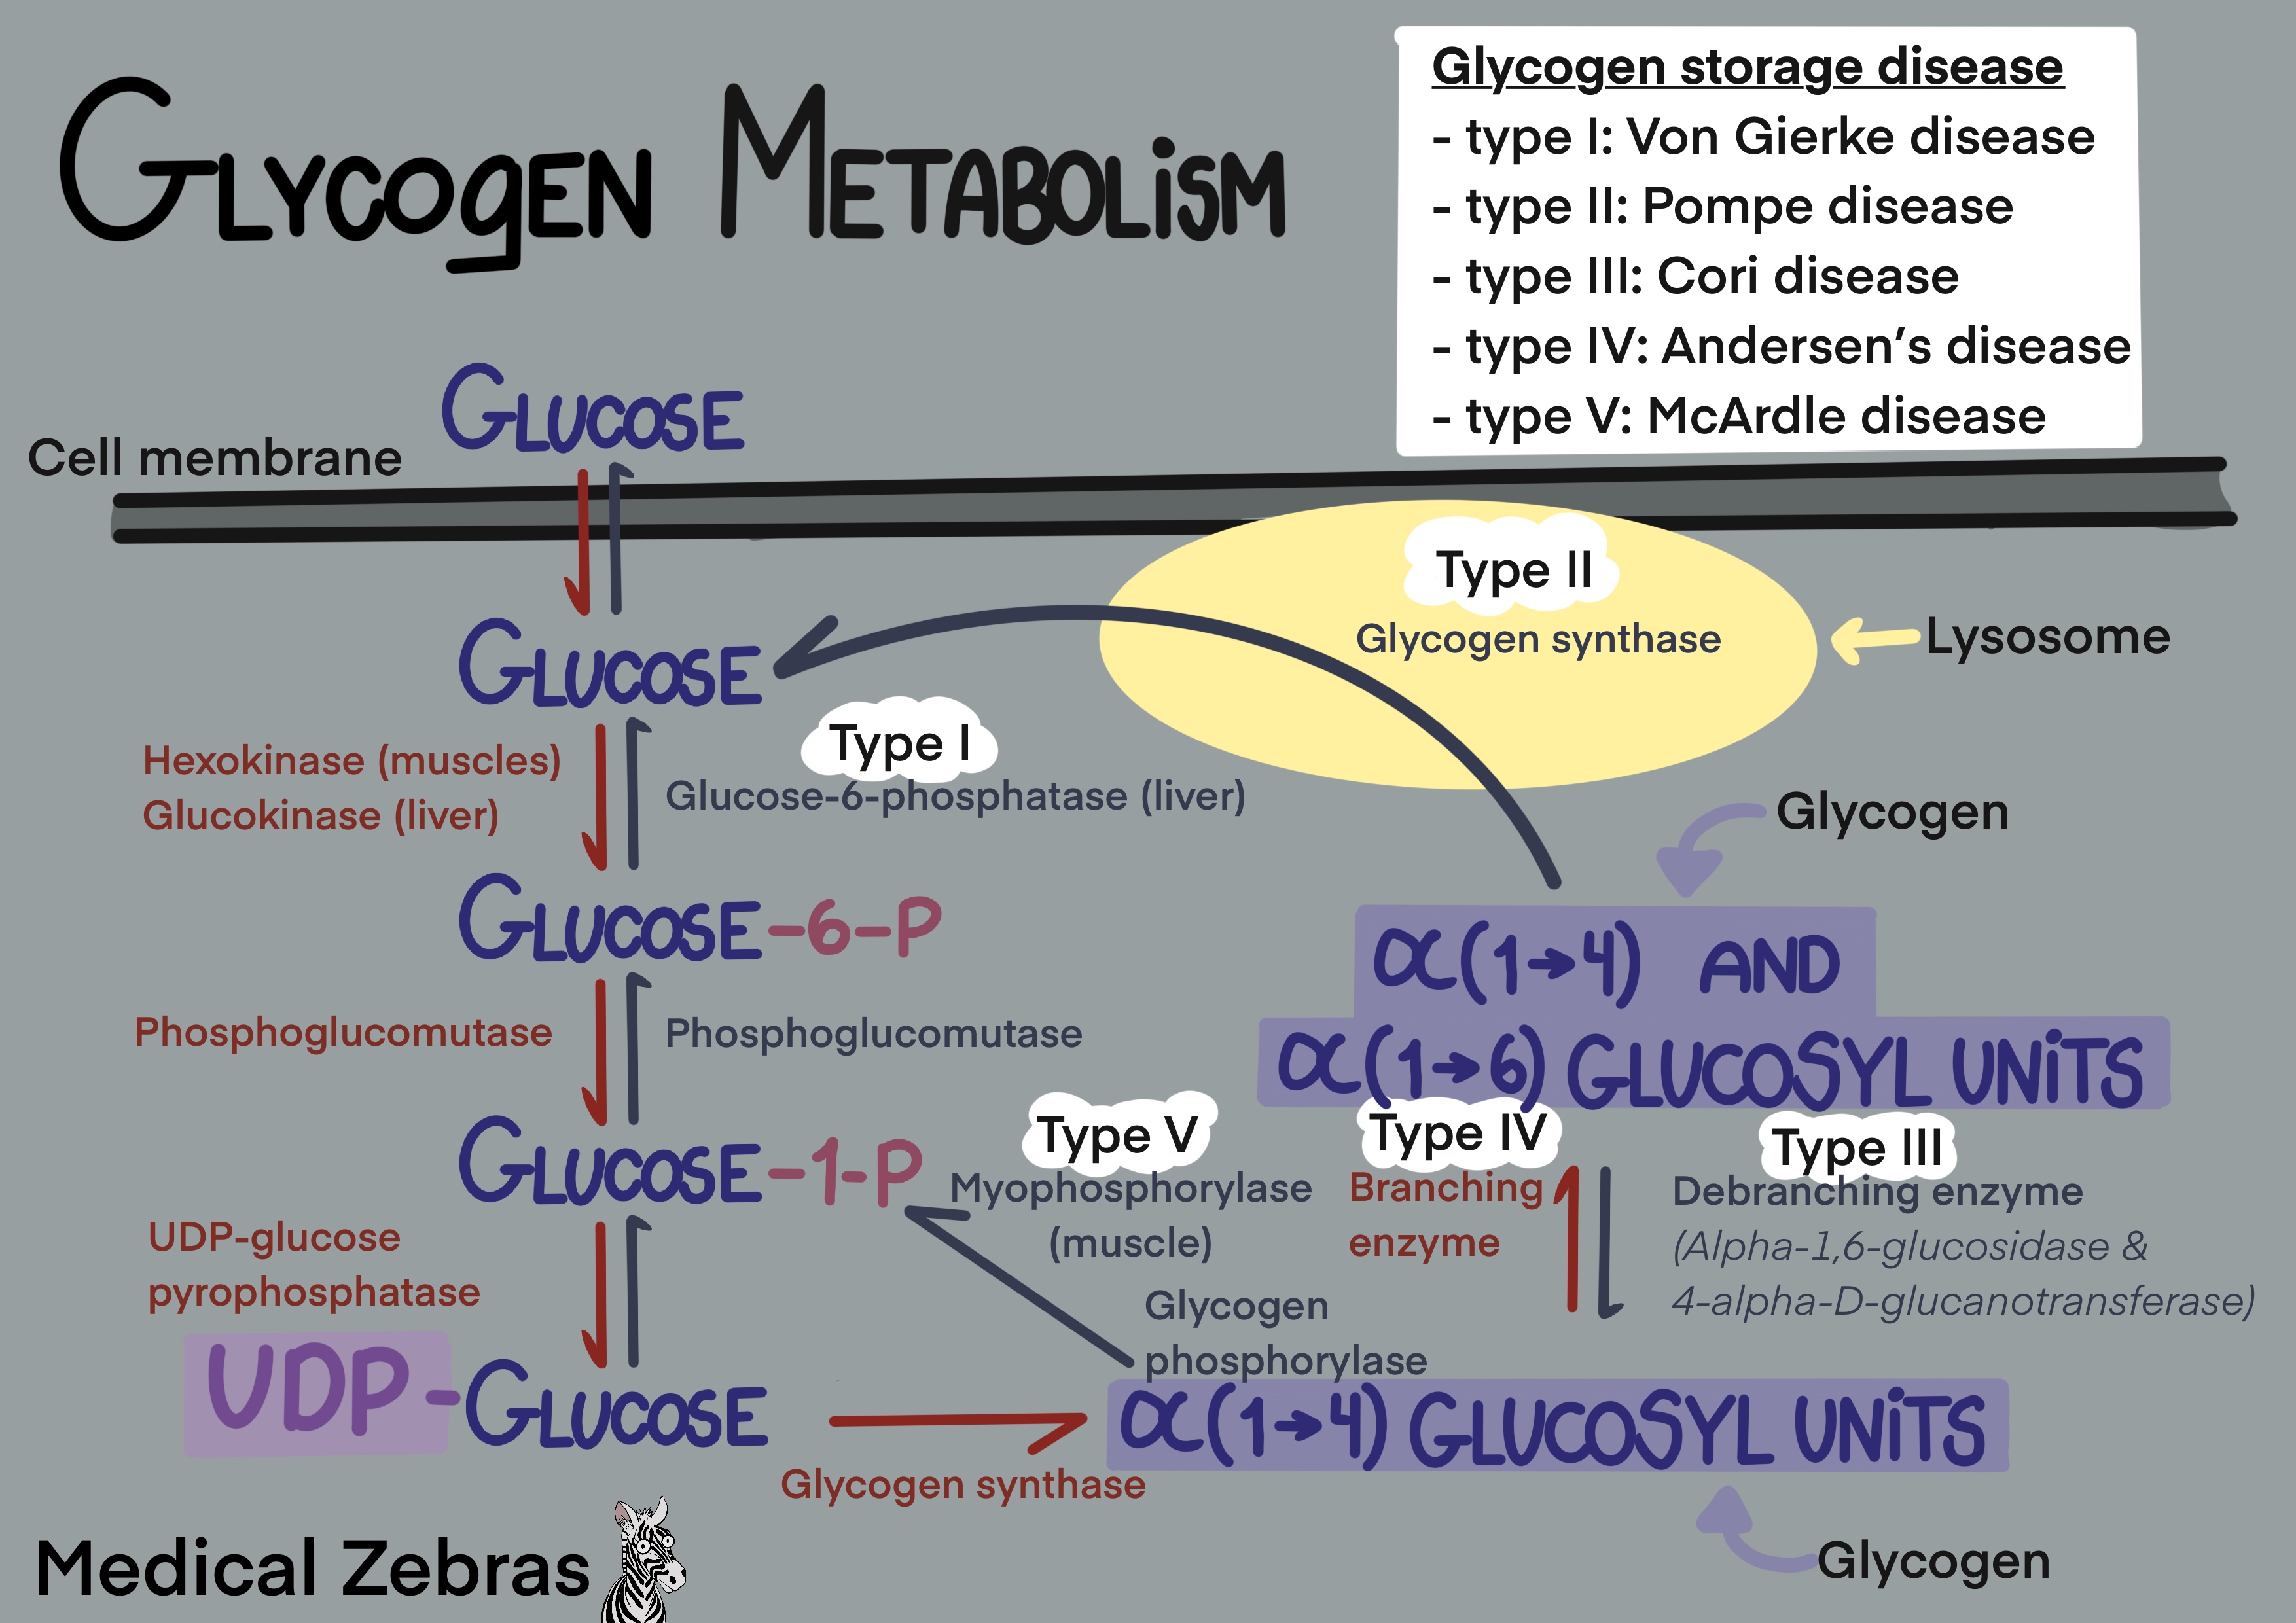 Glycogen metabolism explained